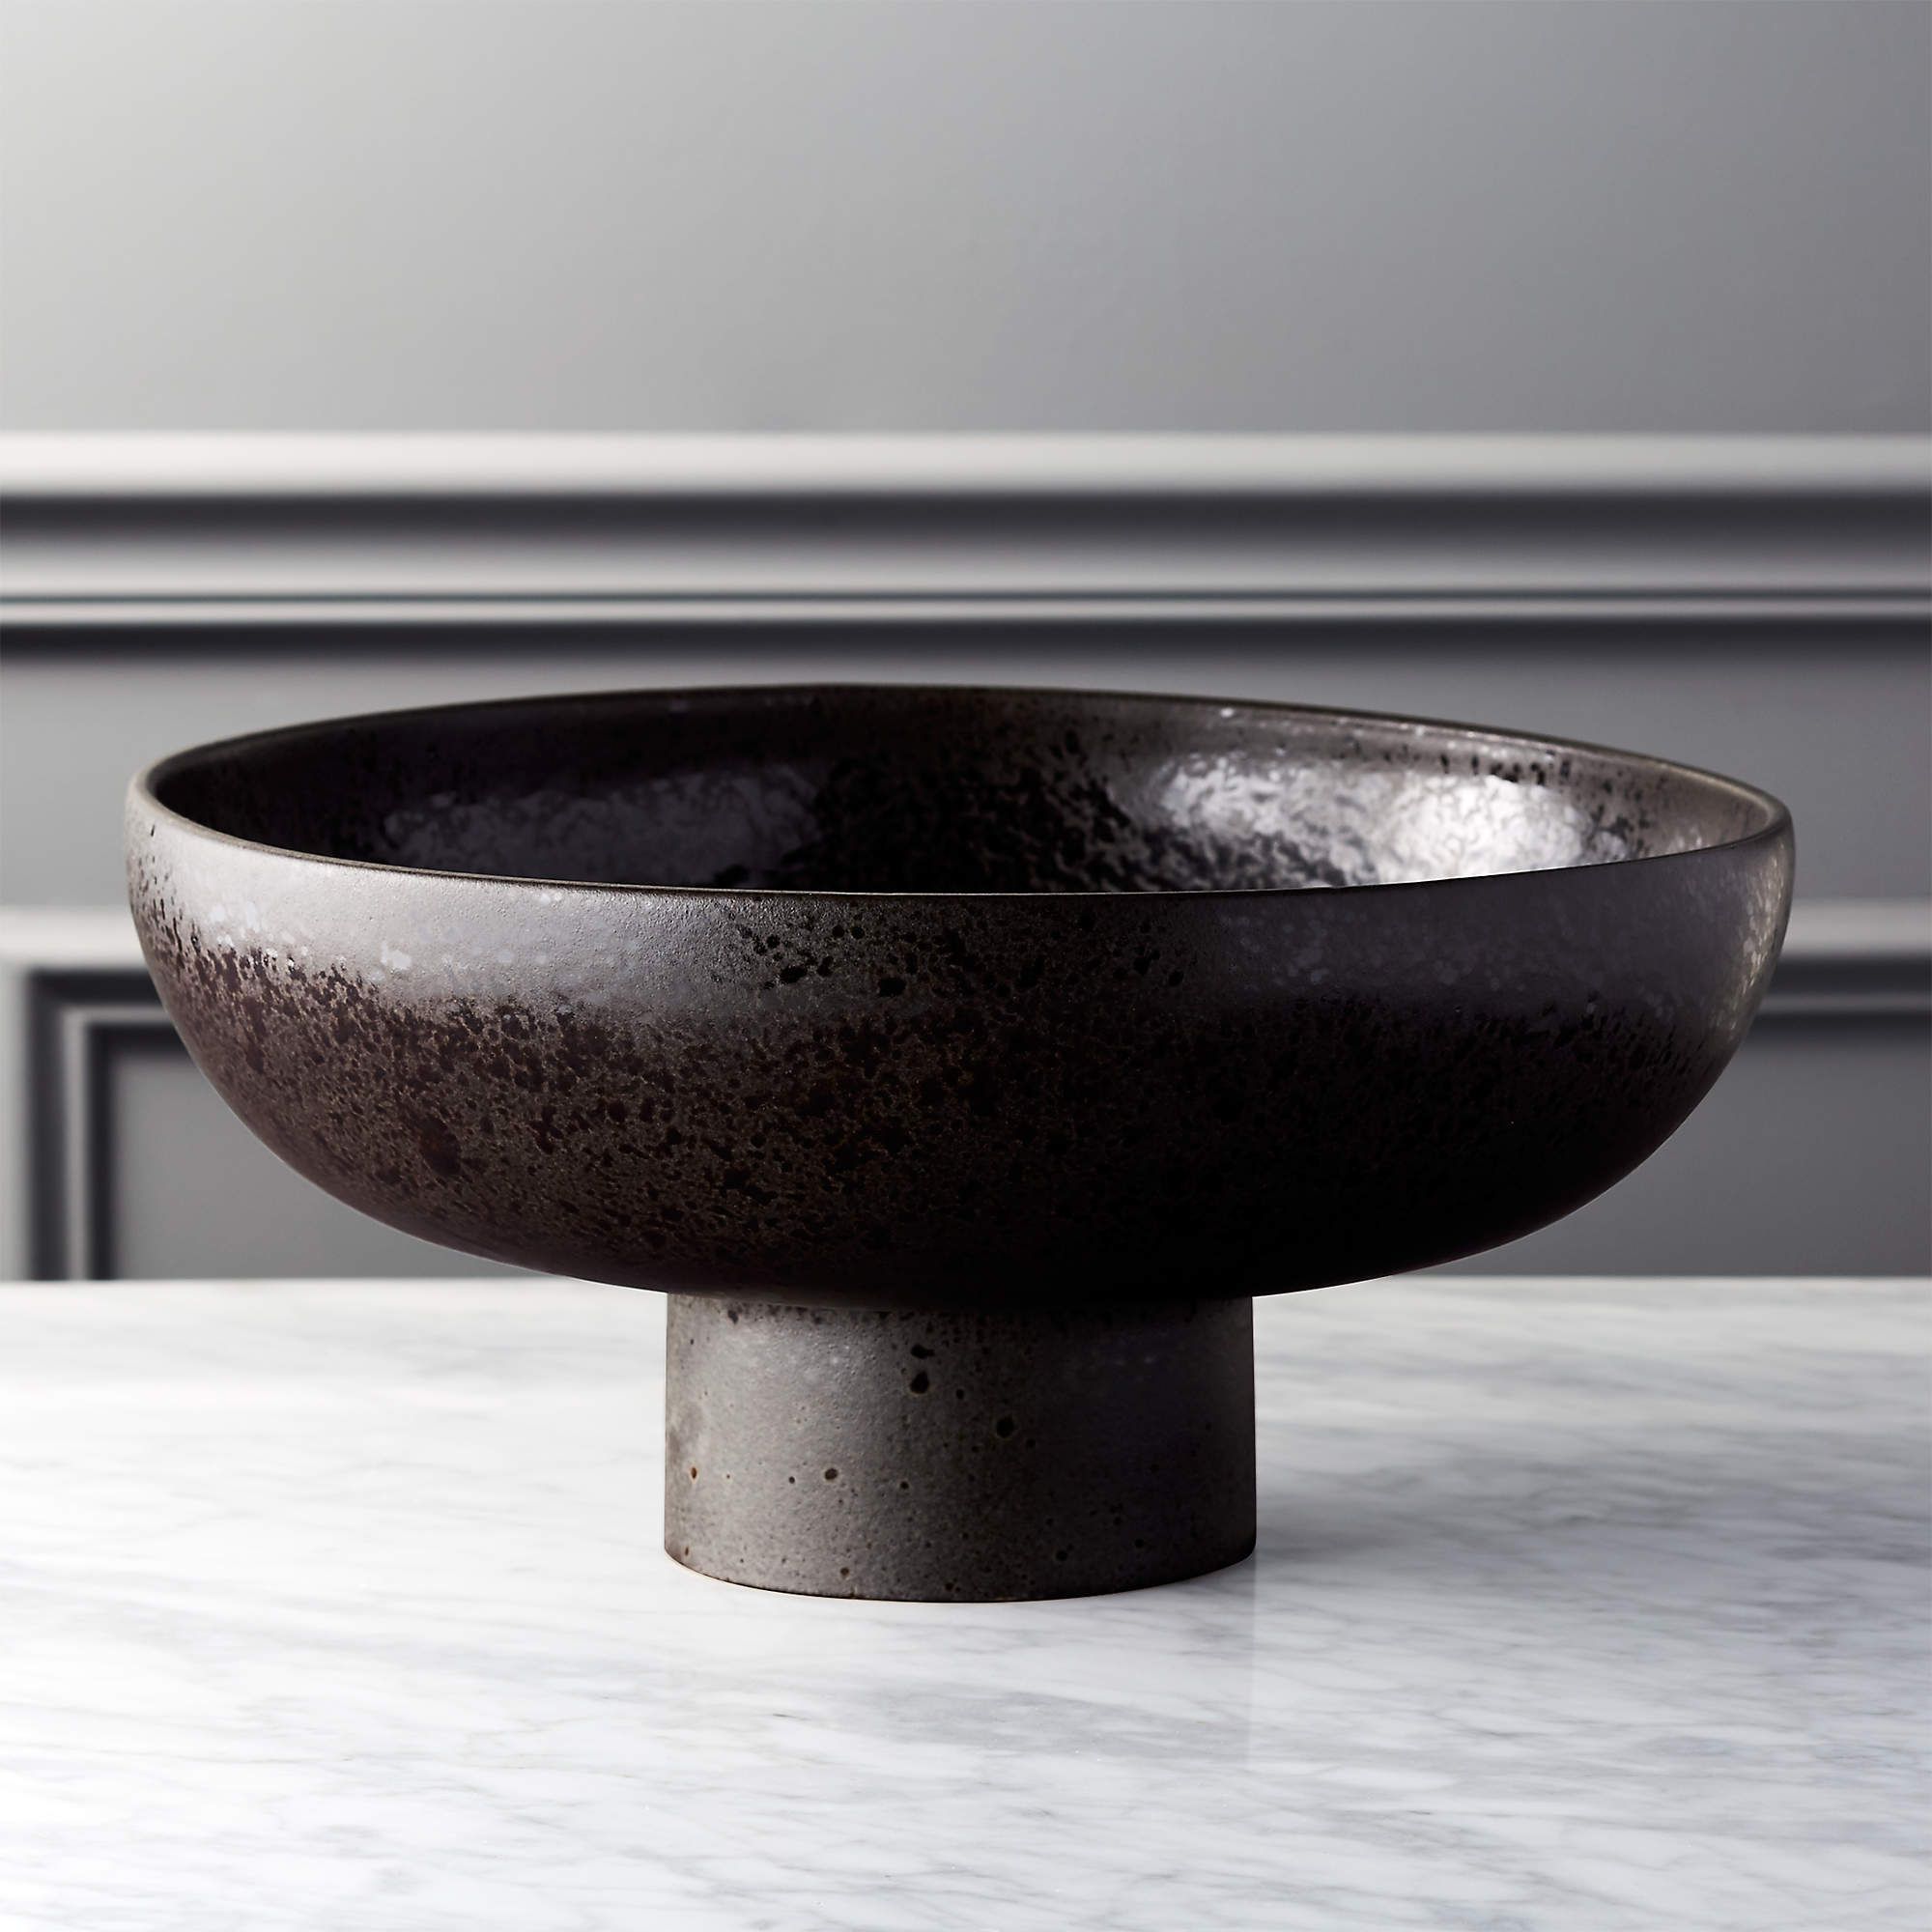 White Ceramic Pedestal Bowl + Reviews | CB2 | CB2